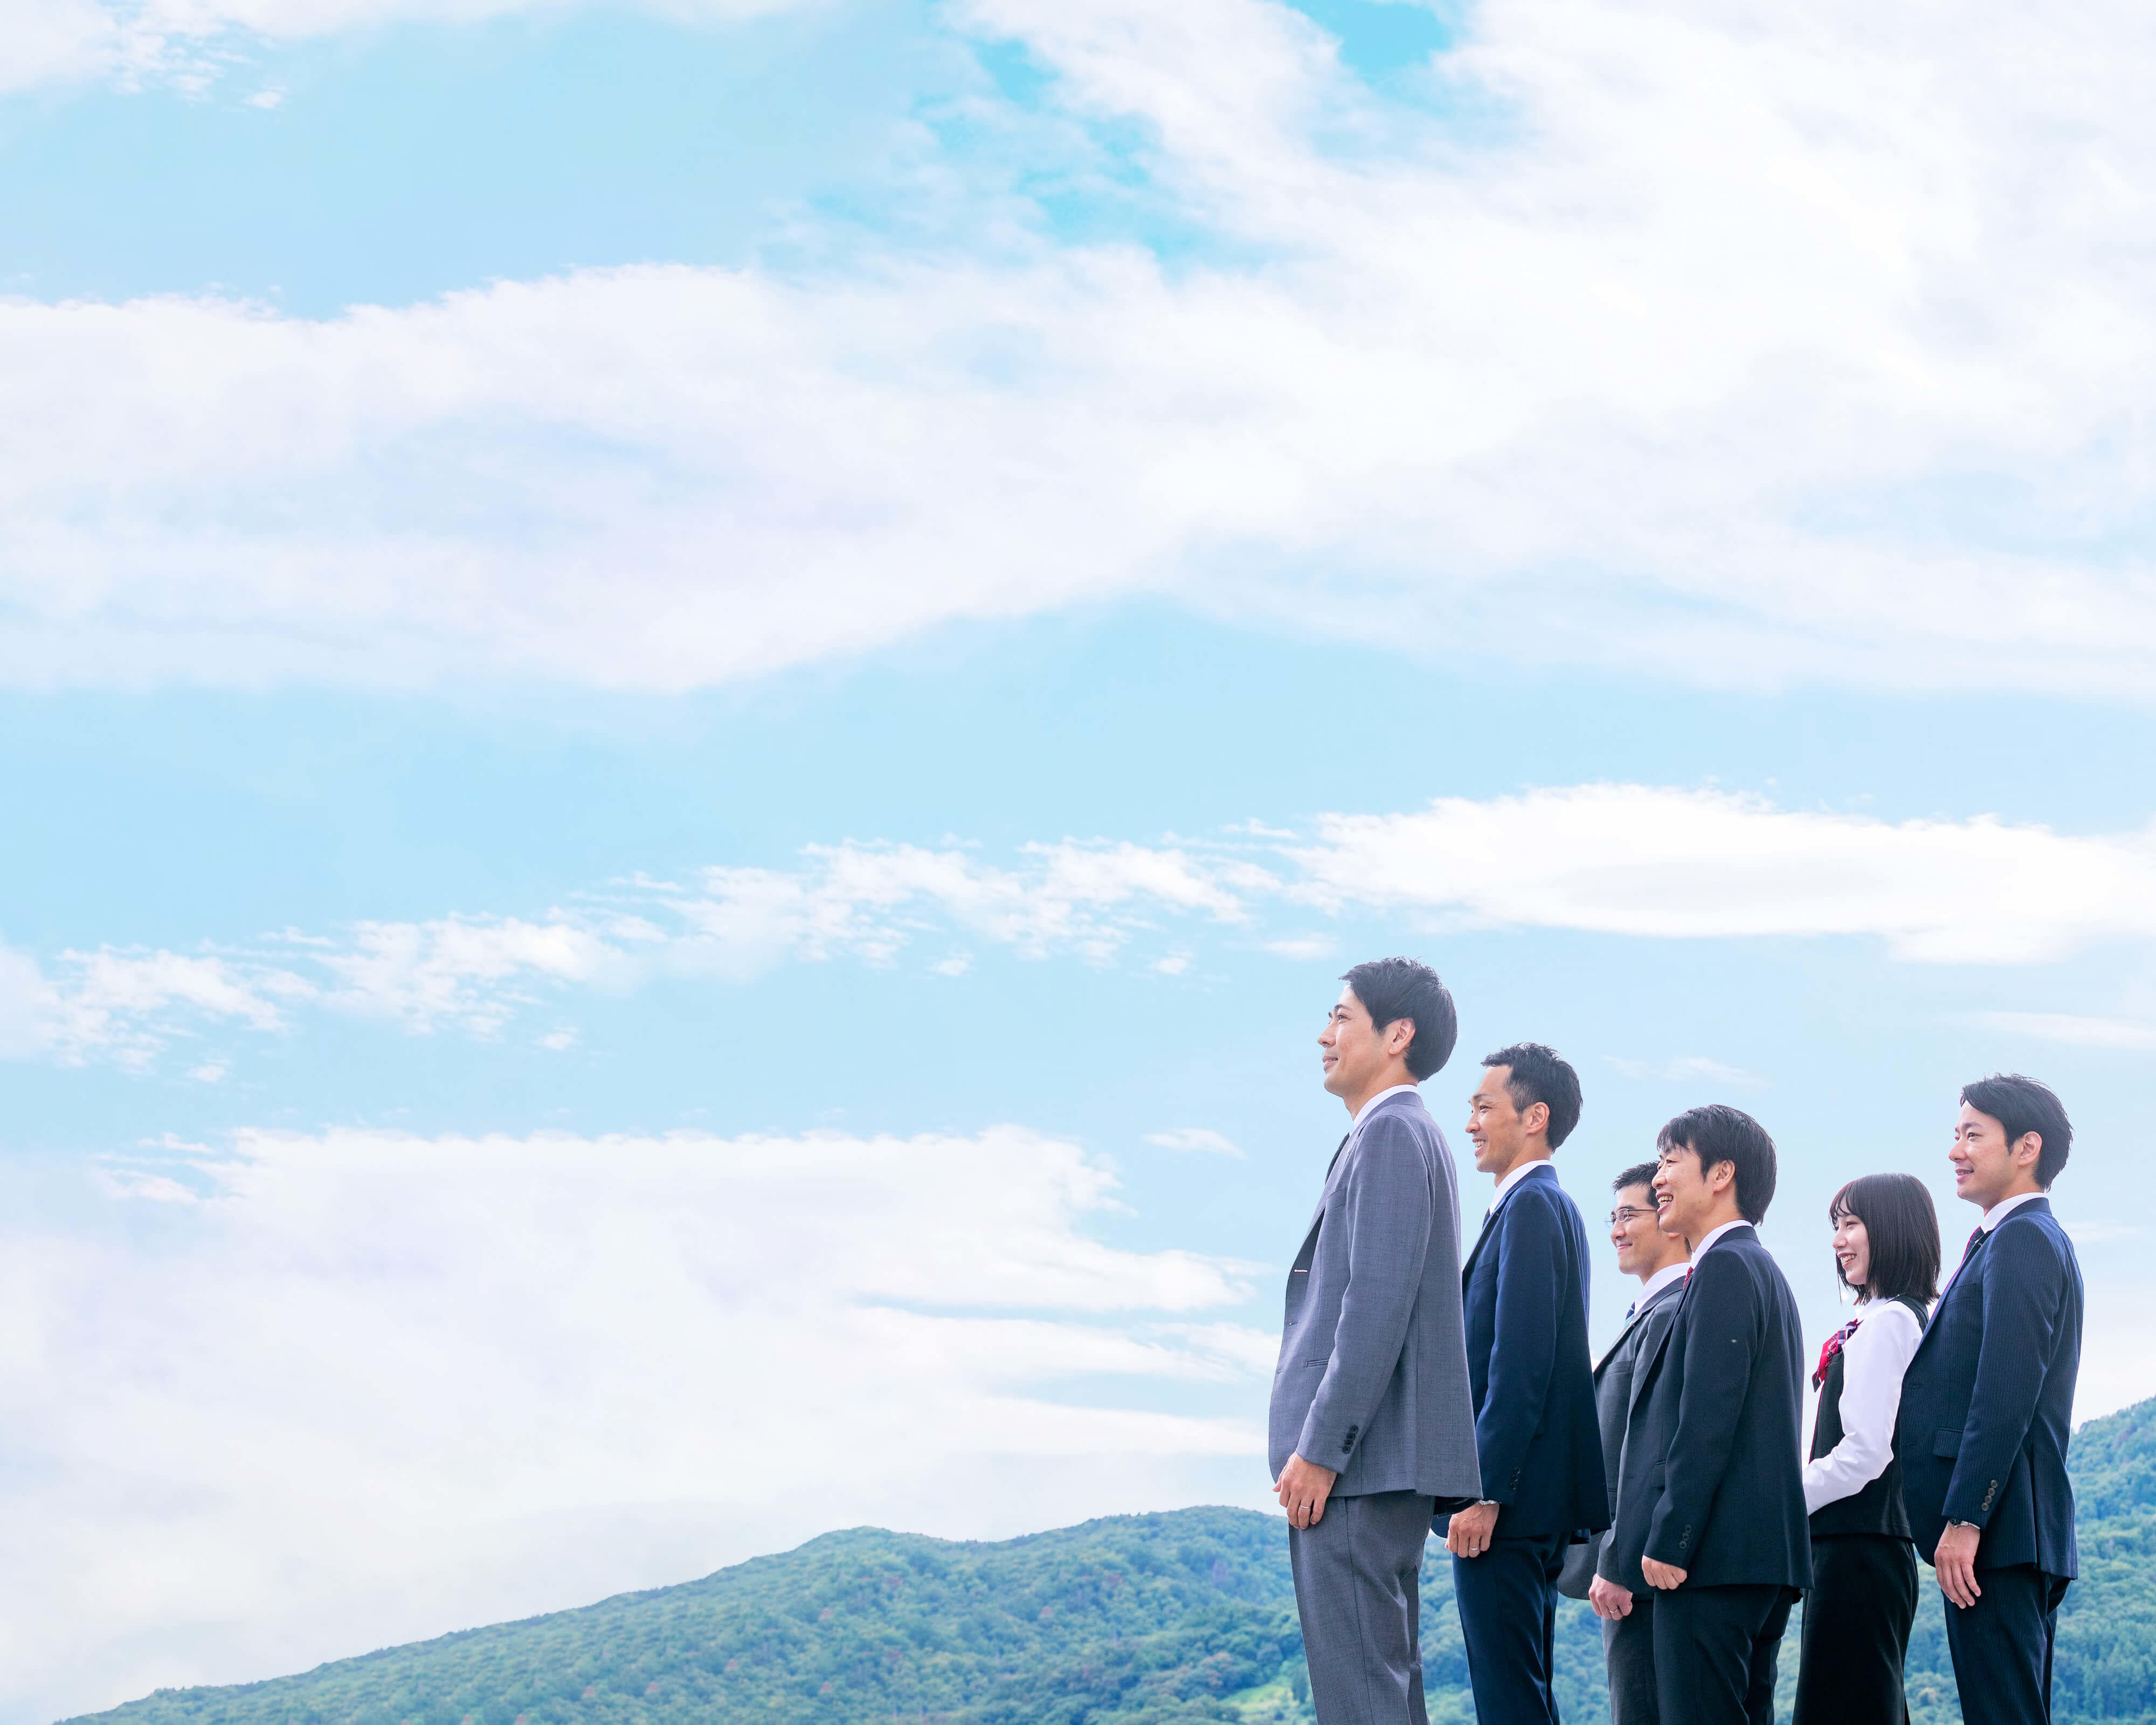 青空と山並みを背景に笑顔で長野市街地を望む長野県信連職員6名